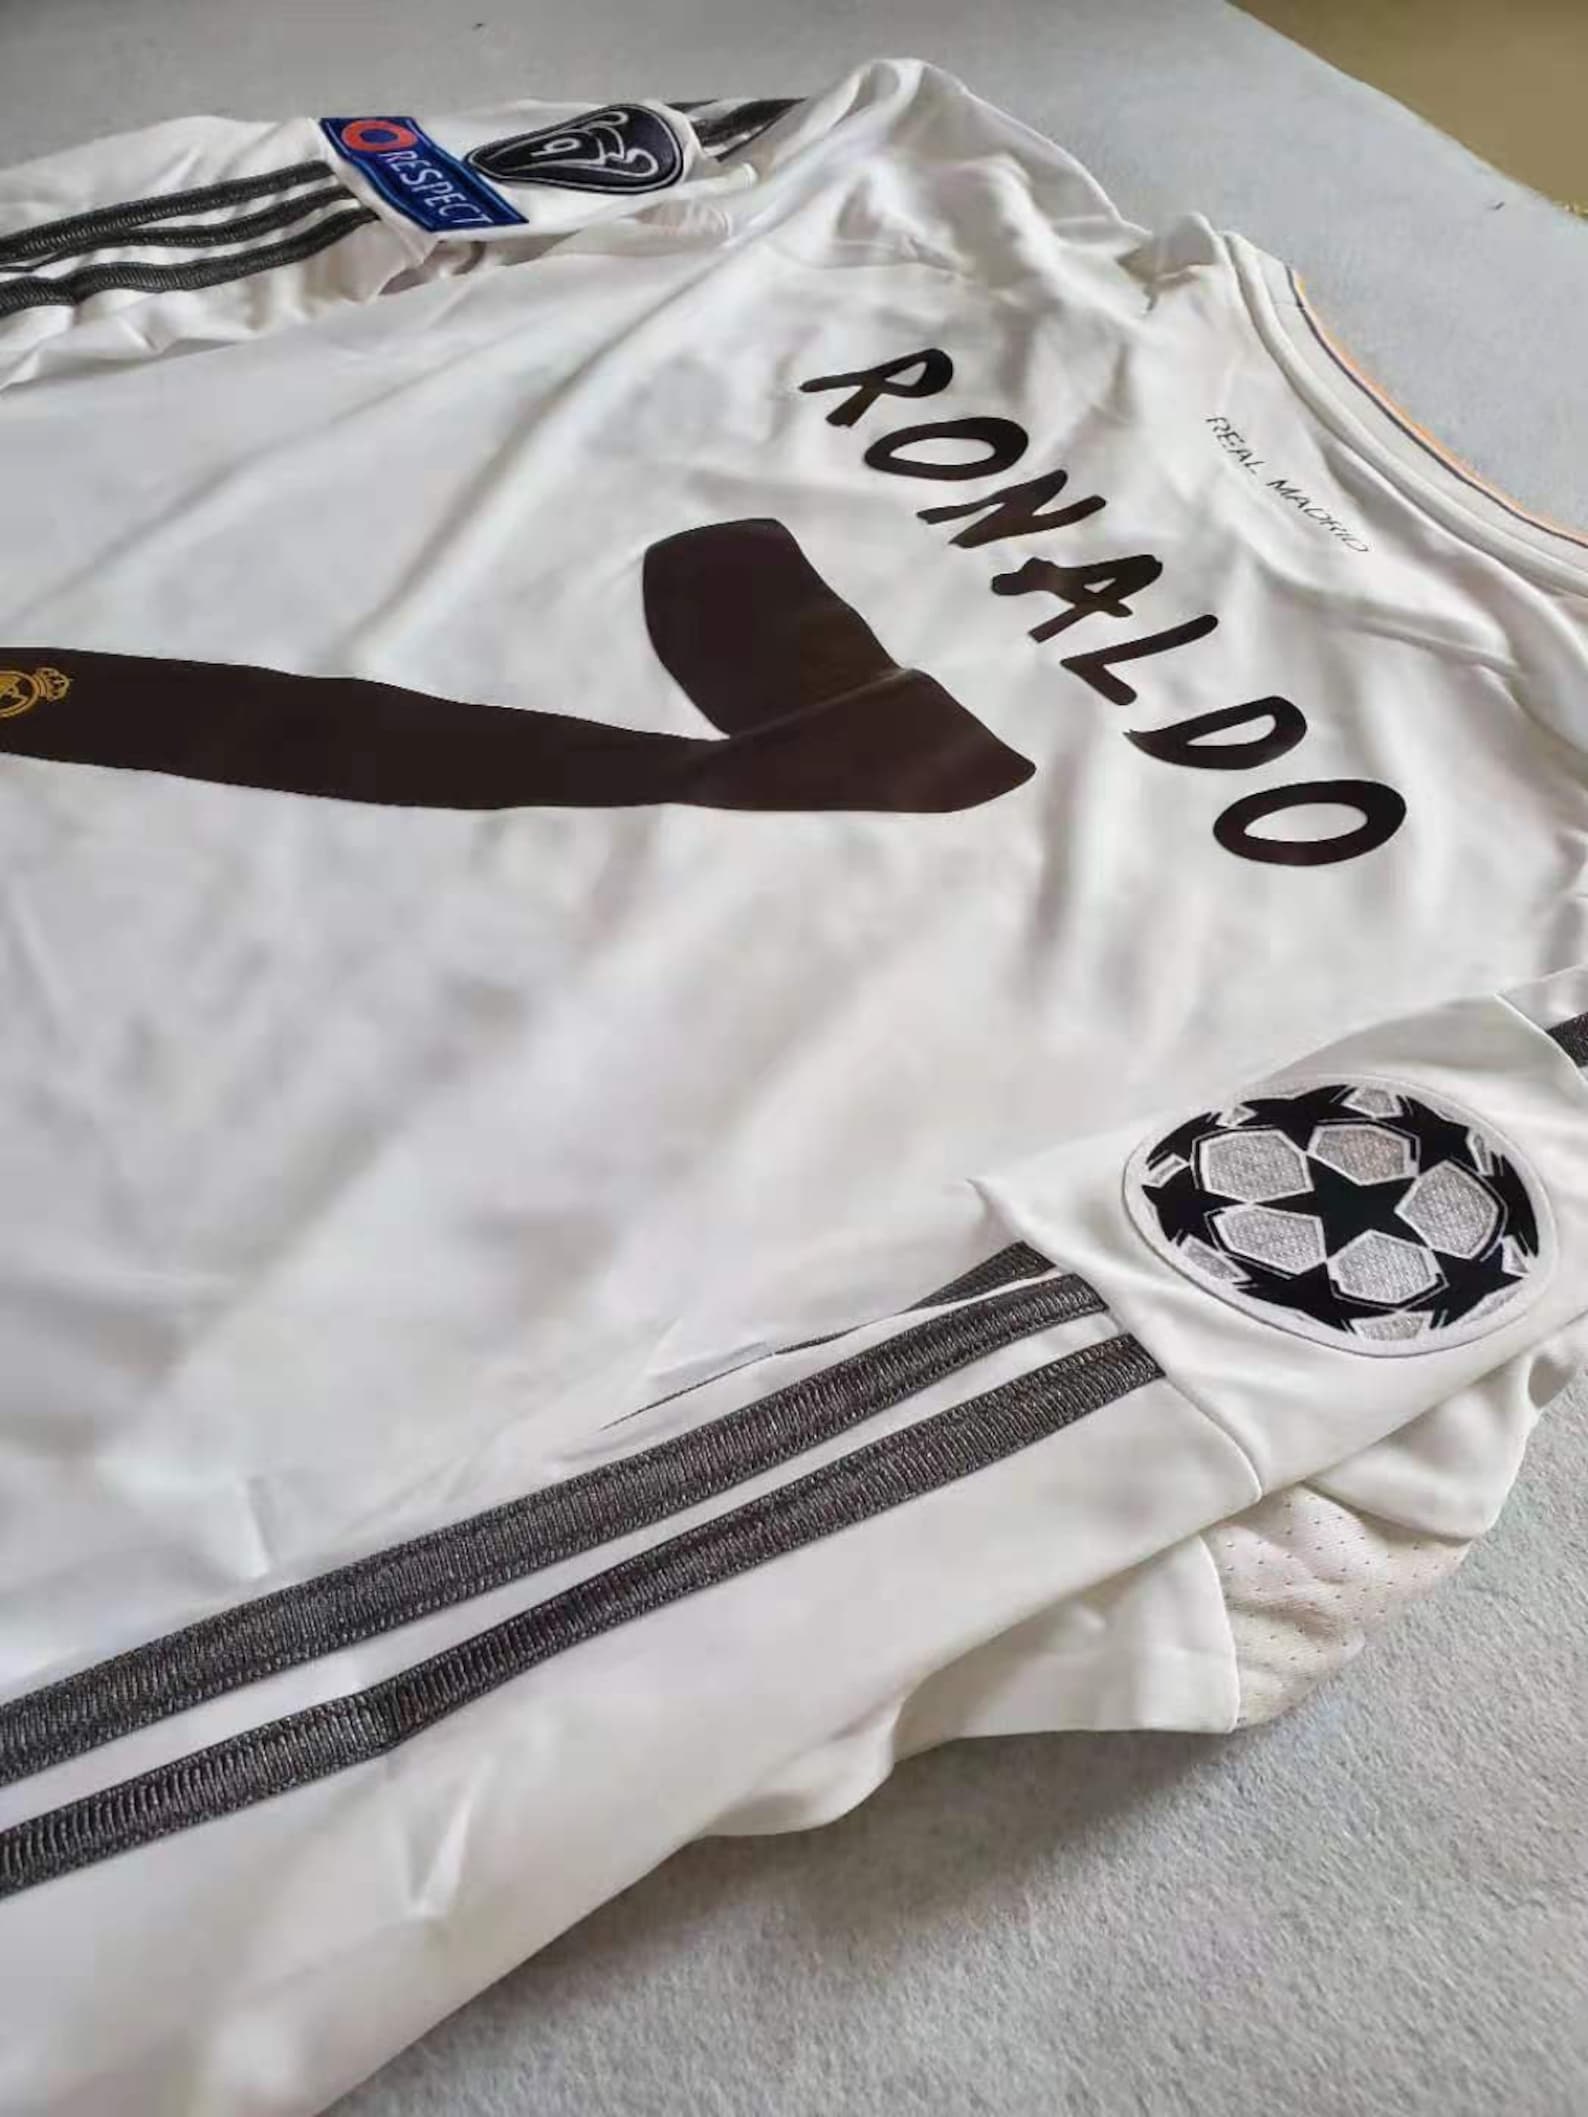 2014 UEFA Real Madrid Cristiano Ronaldo 7 Soccer Jersey White | Etsy